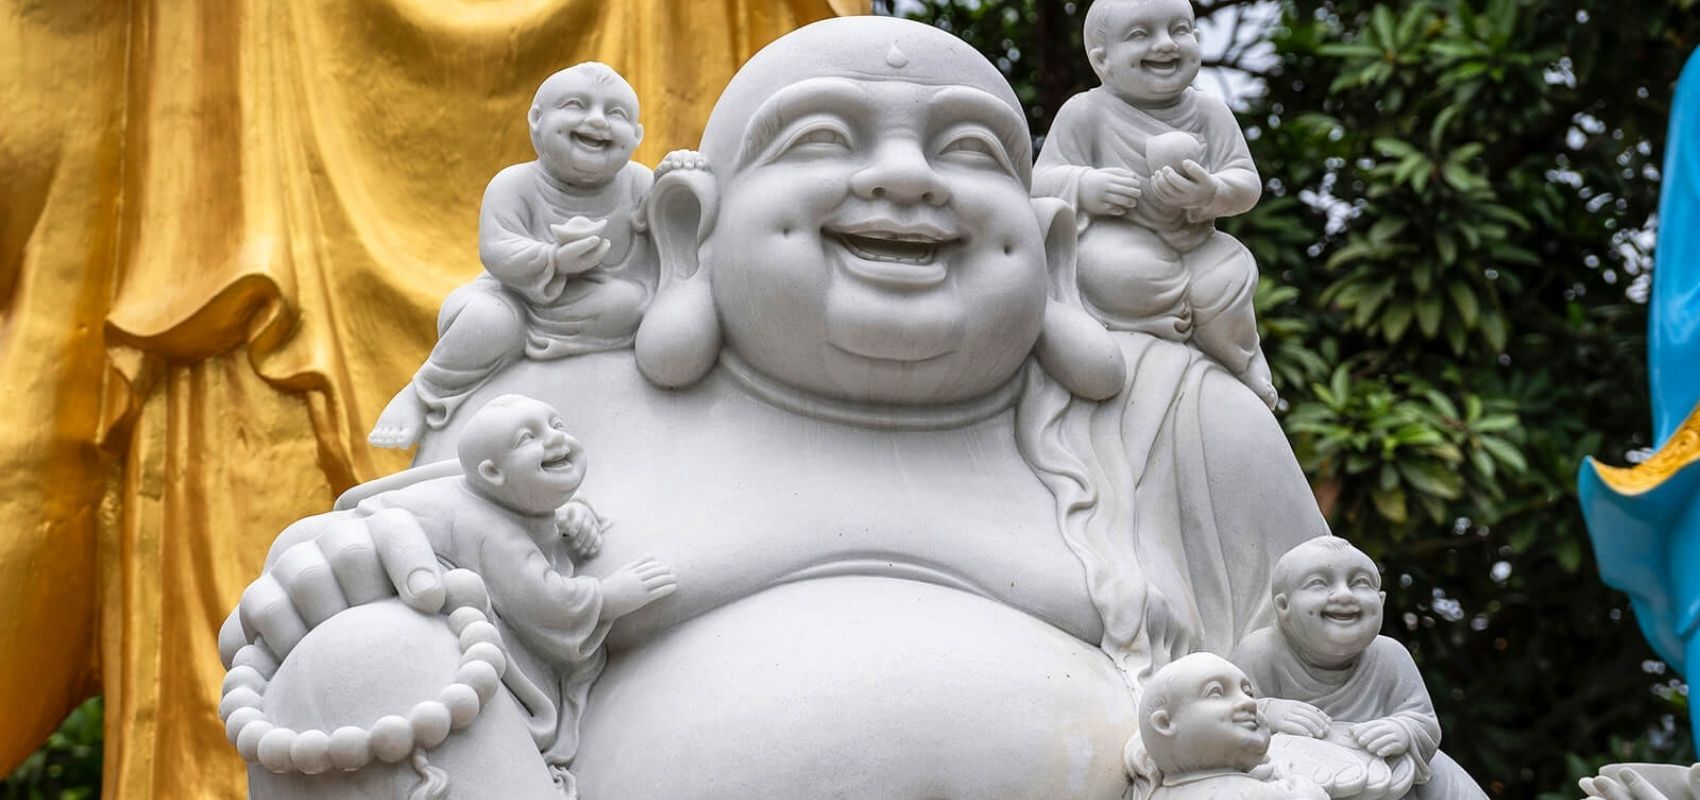 Le bouddha rieur traditionnel aux enfants, symbole de la fertilité